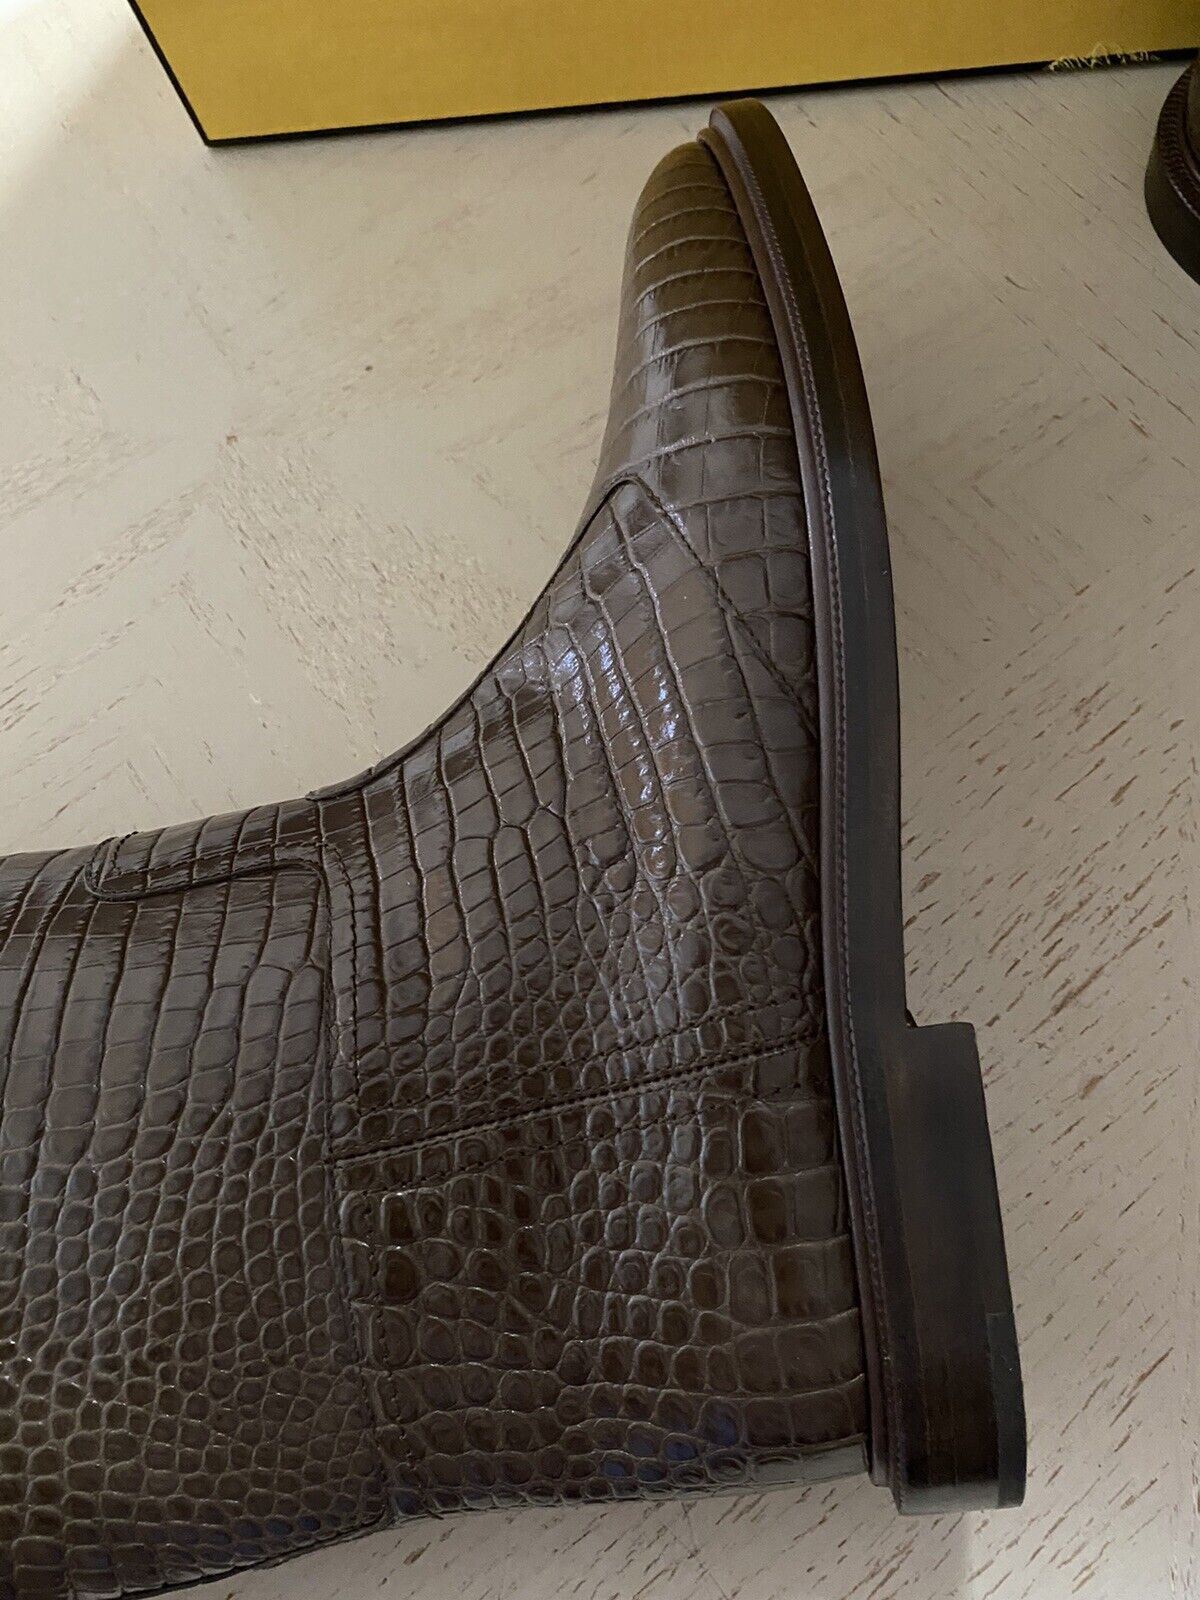 NIB $1590 Fendi Women Croc Embossed Leather Boots Shoes Color Maya 10/40 Eu